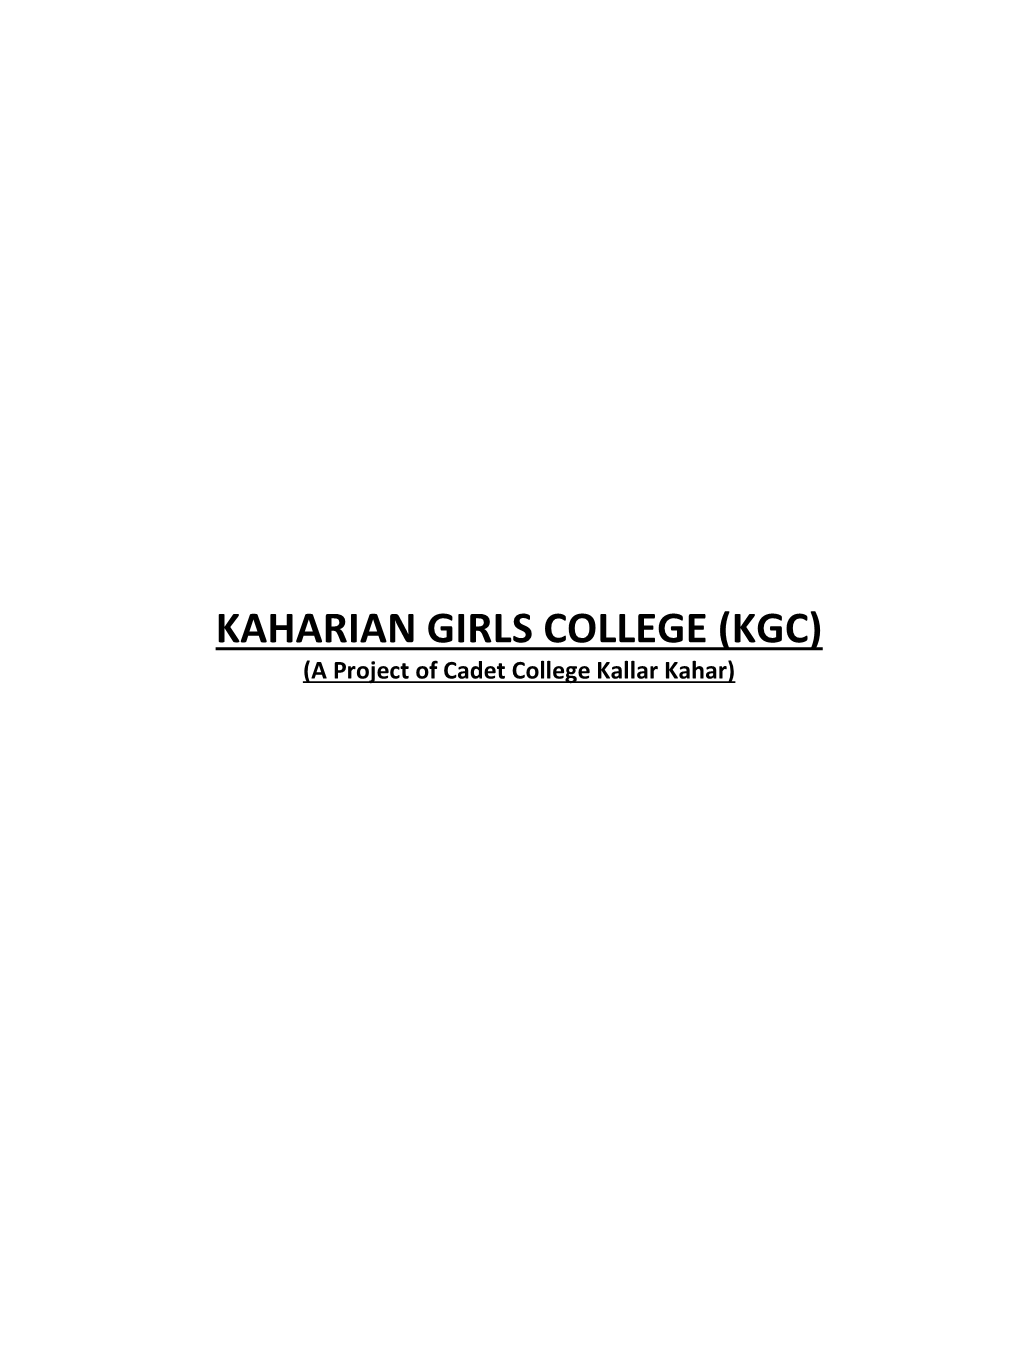 KAHARIAN GIRLS COLLEGE (KGC) (A Project of Cadet College Kallar Kahar)